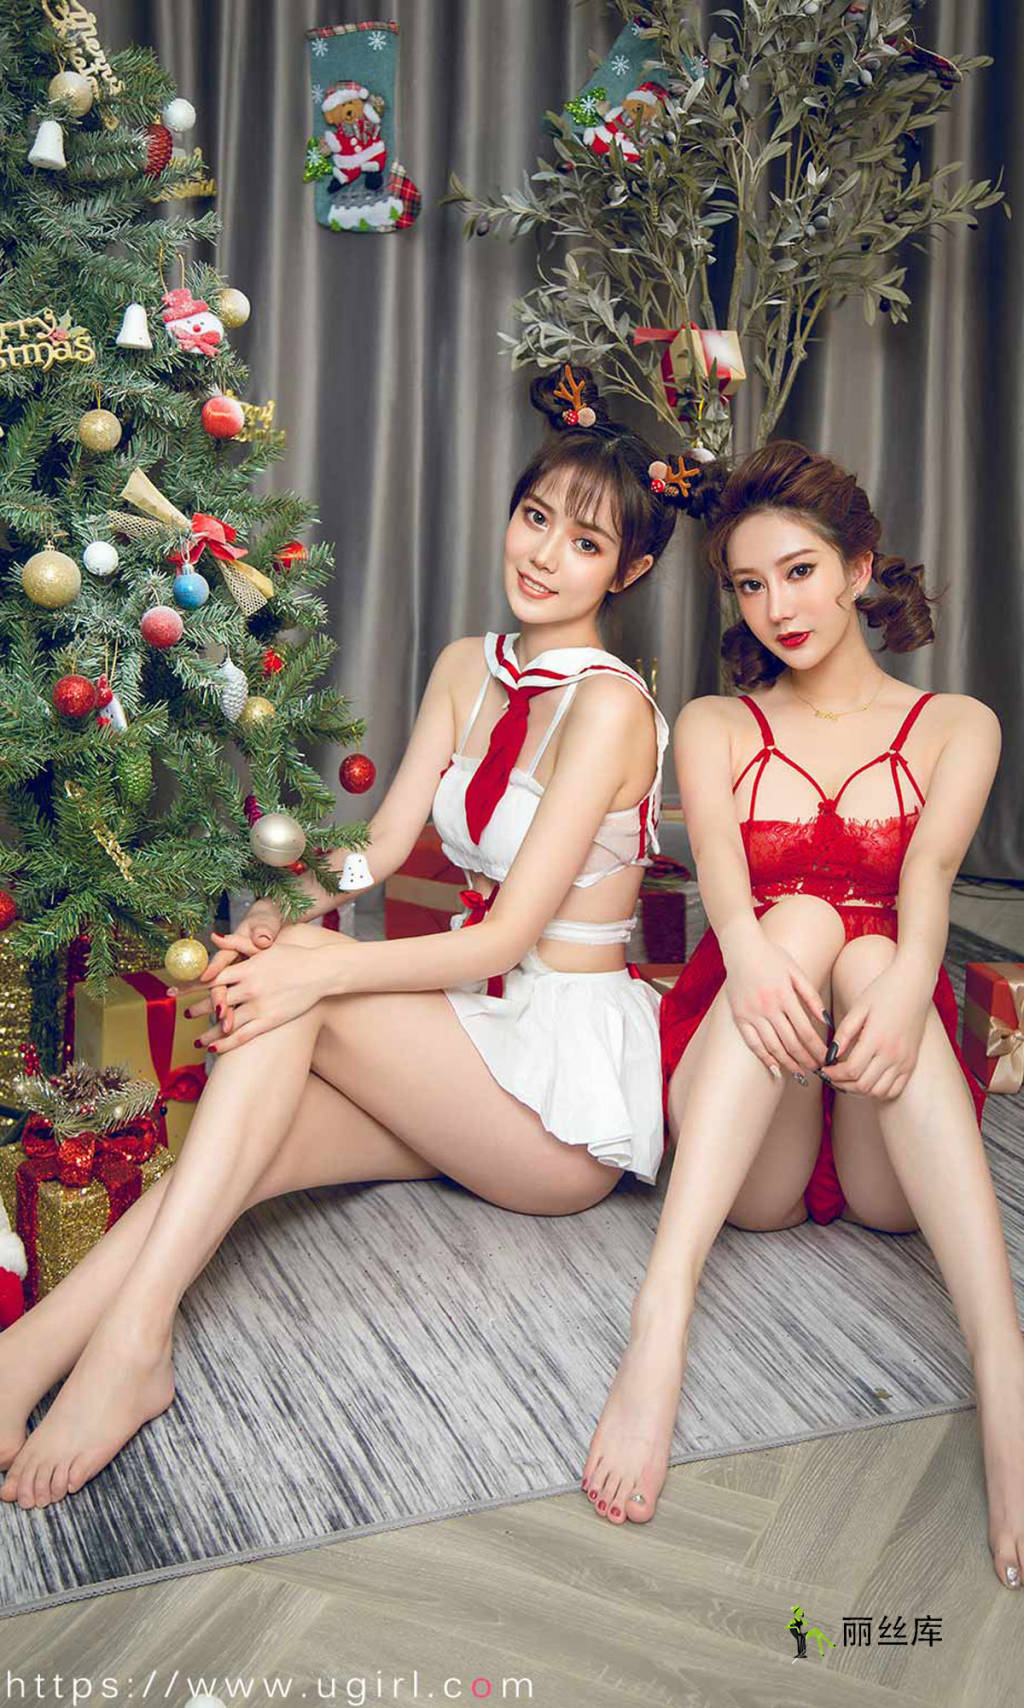 爱尤物UGirlsAPP 2019.12.25 No.1680 圣诞狂欢 苏小曼&唐小糖_丽丝库